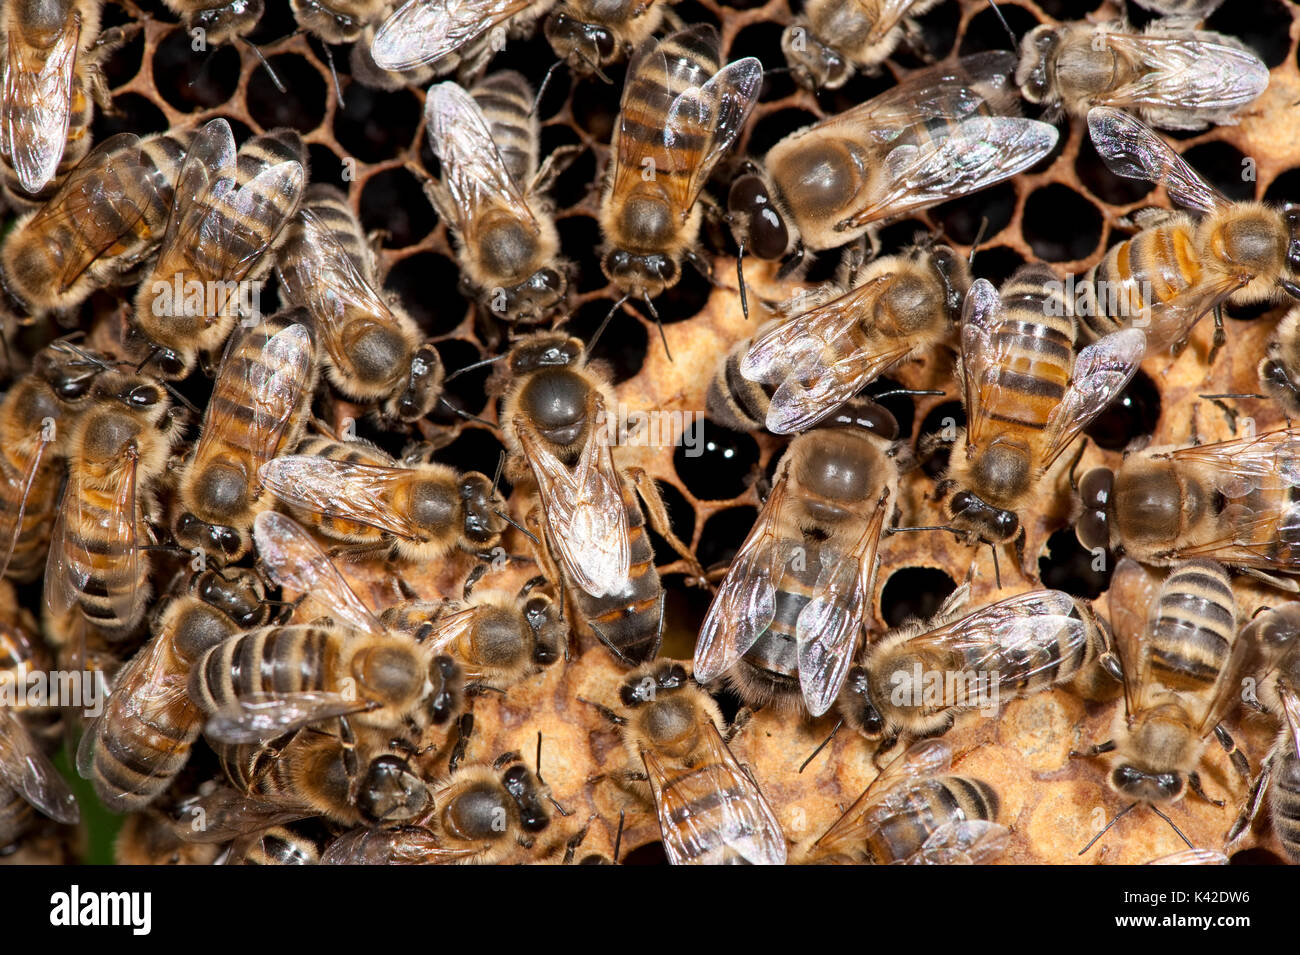 La reine d'assister aux travailleurs, abeille, Apis mellifera, Kent UK, à l'intérieur de la ruche, Banque D'Images